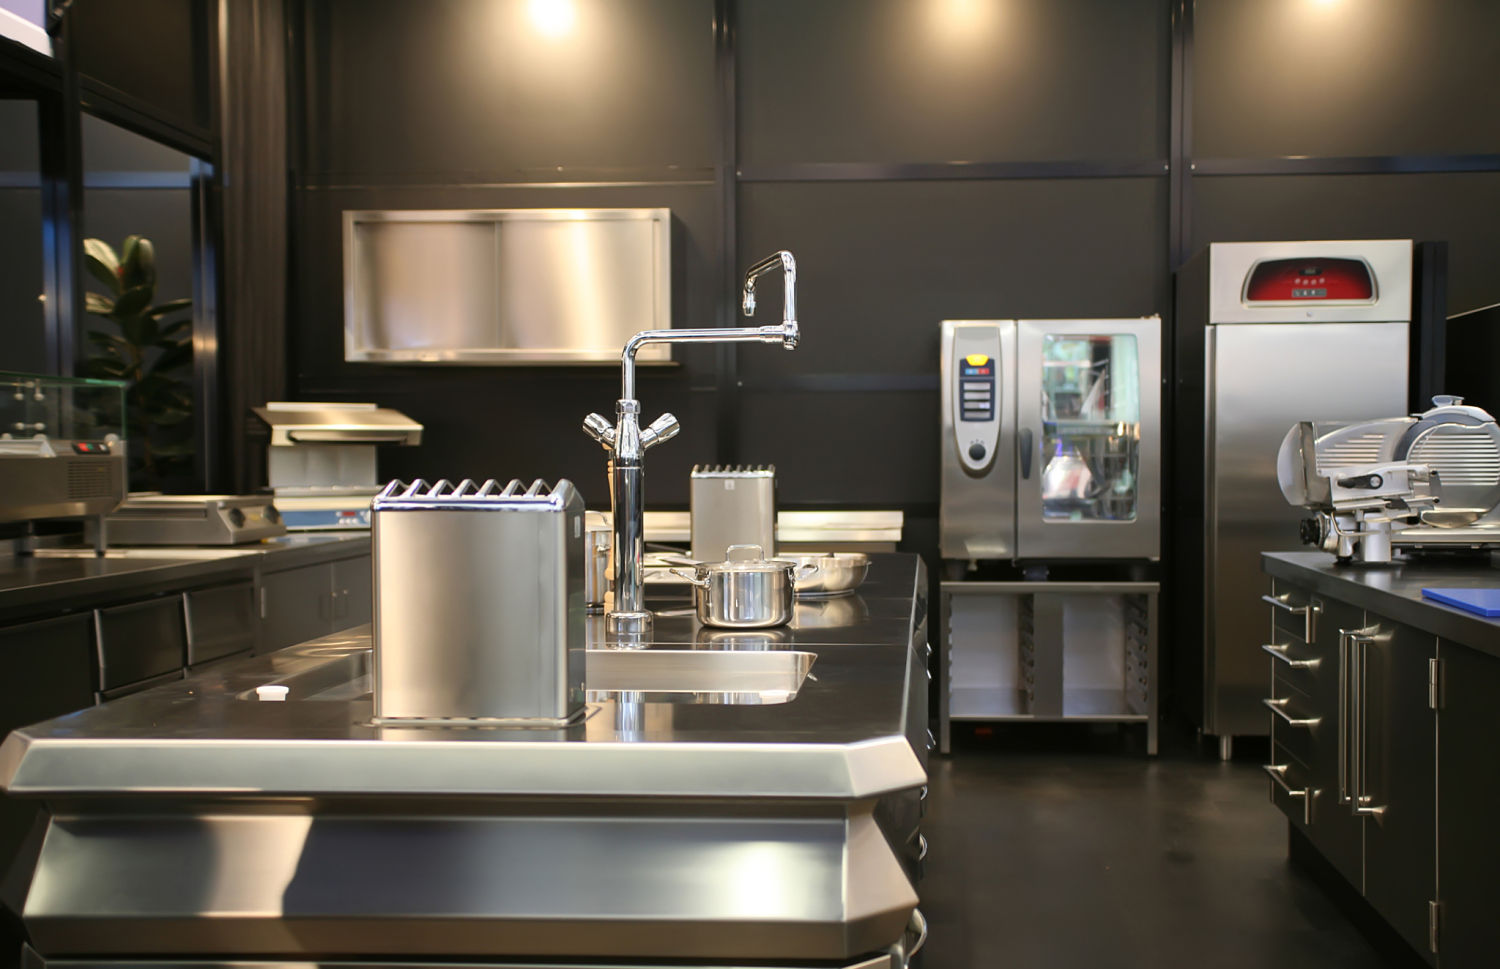 alluring-restaurant-kitchen-equipment-restaurant-equipment-we-images-of-new-in-design-2015-restaurant-kitchen-equipment-list